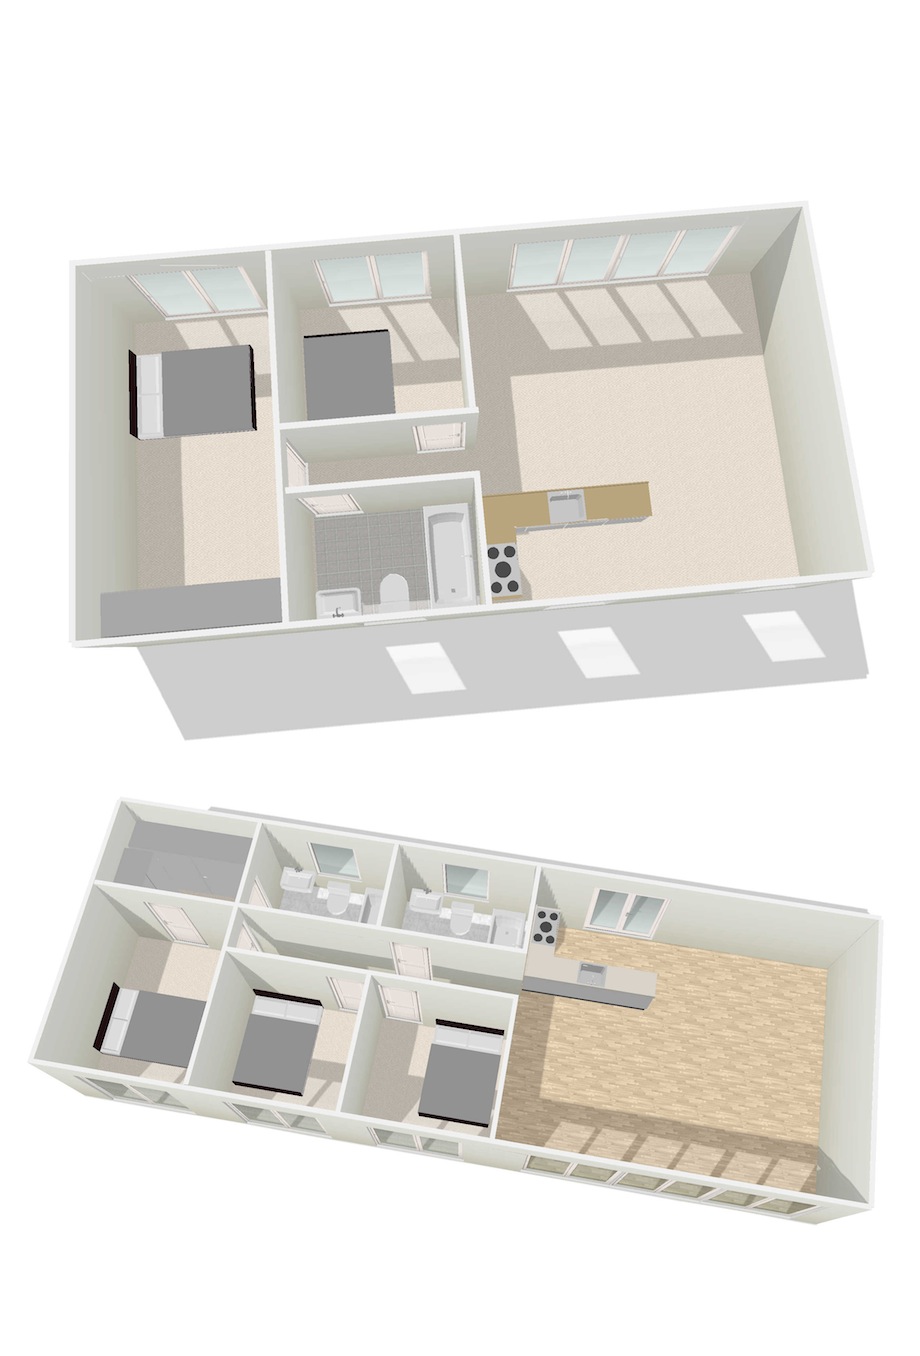 Mobile-Home-Floor-Plans-3d-p5